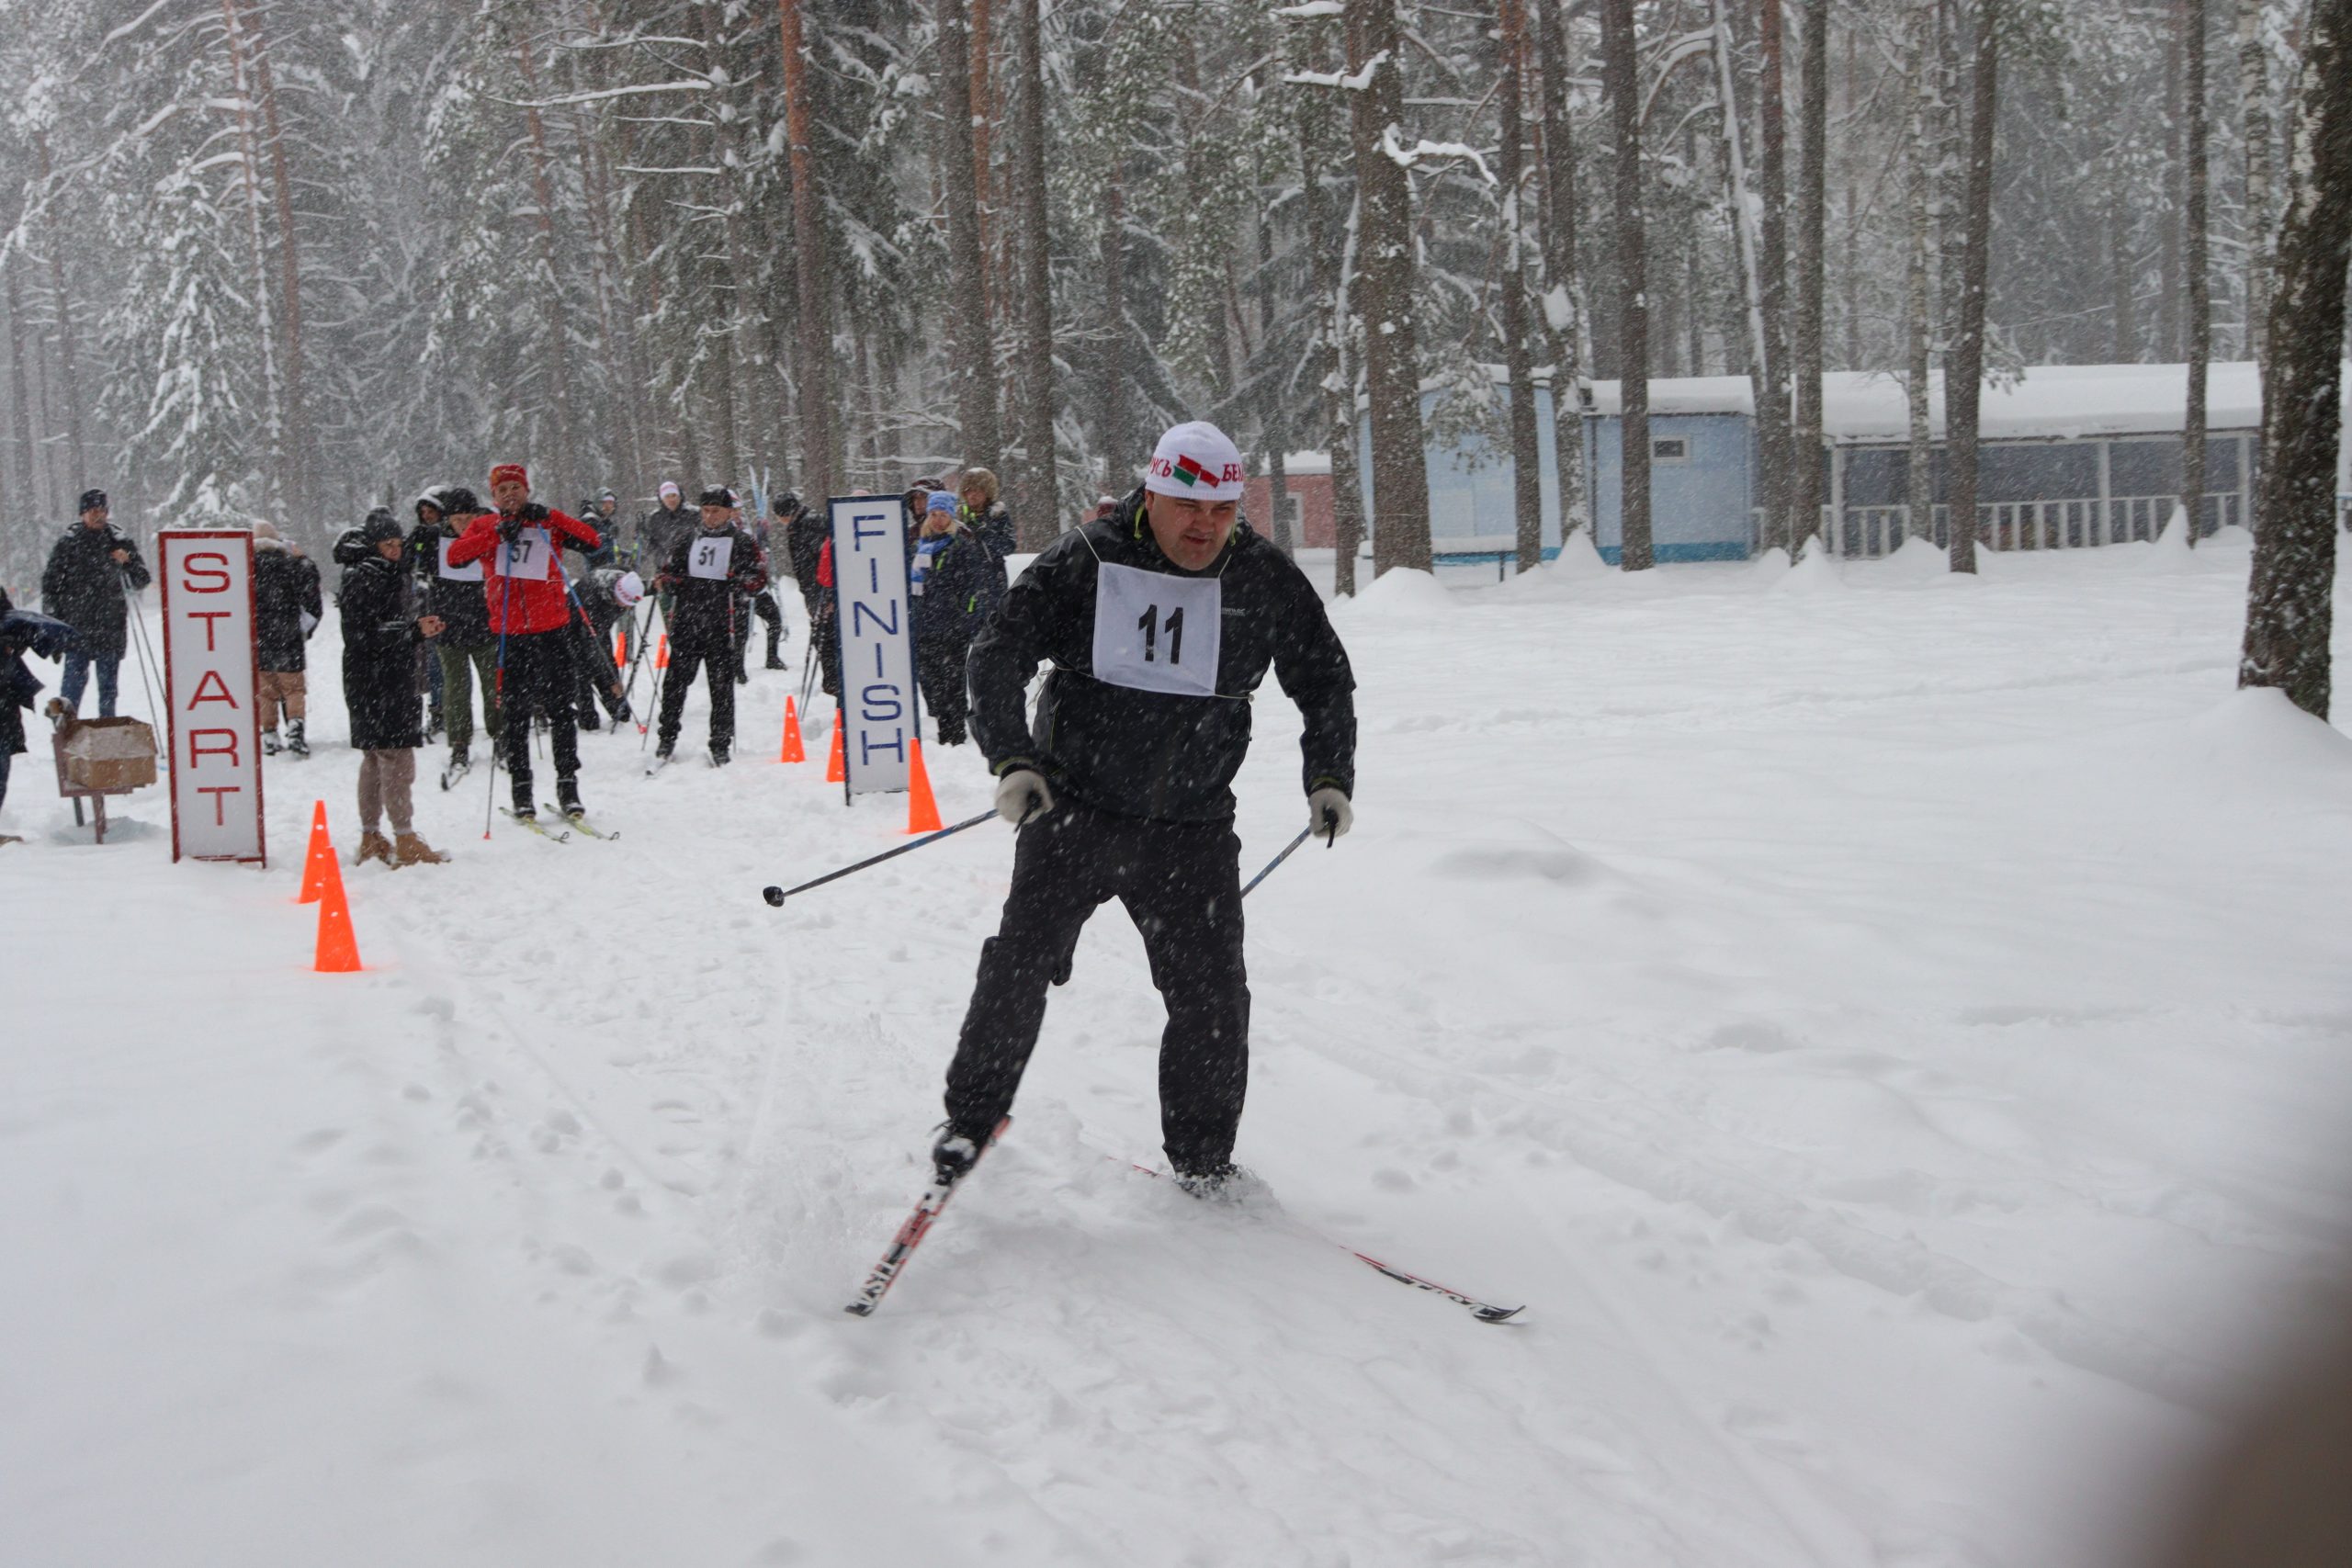 Снег и лыжи — здоровый образ жизни. Сегодня в Бобруйском районе прошли соревнования по биатлону среди госслужащих